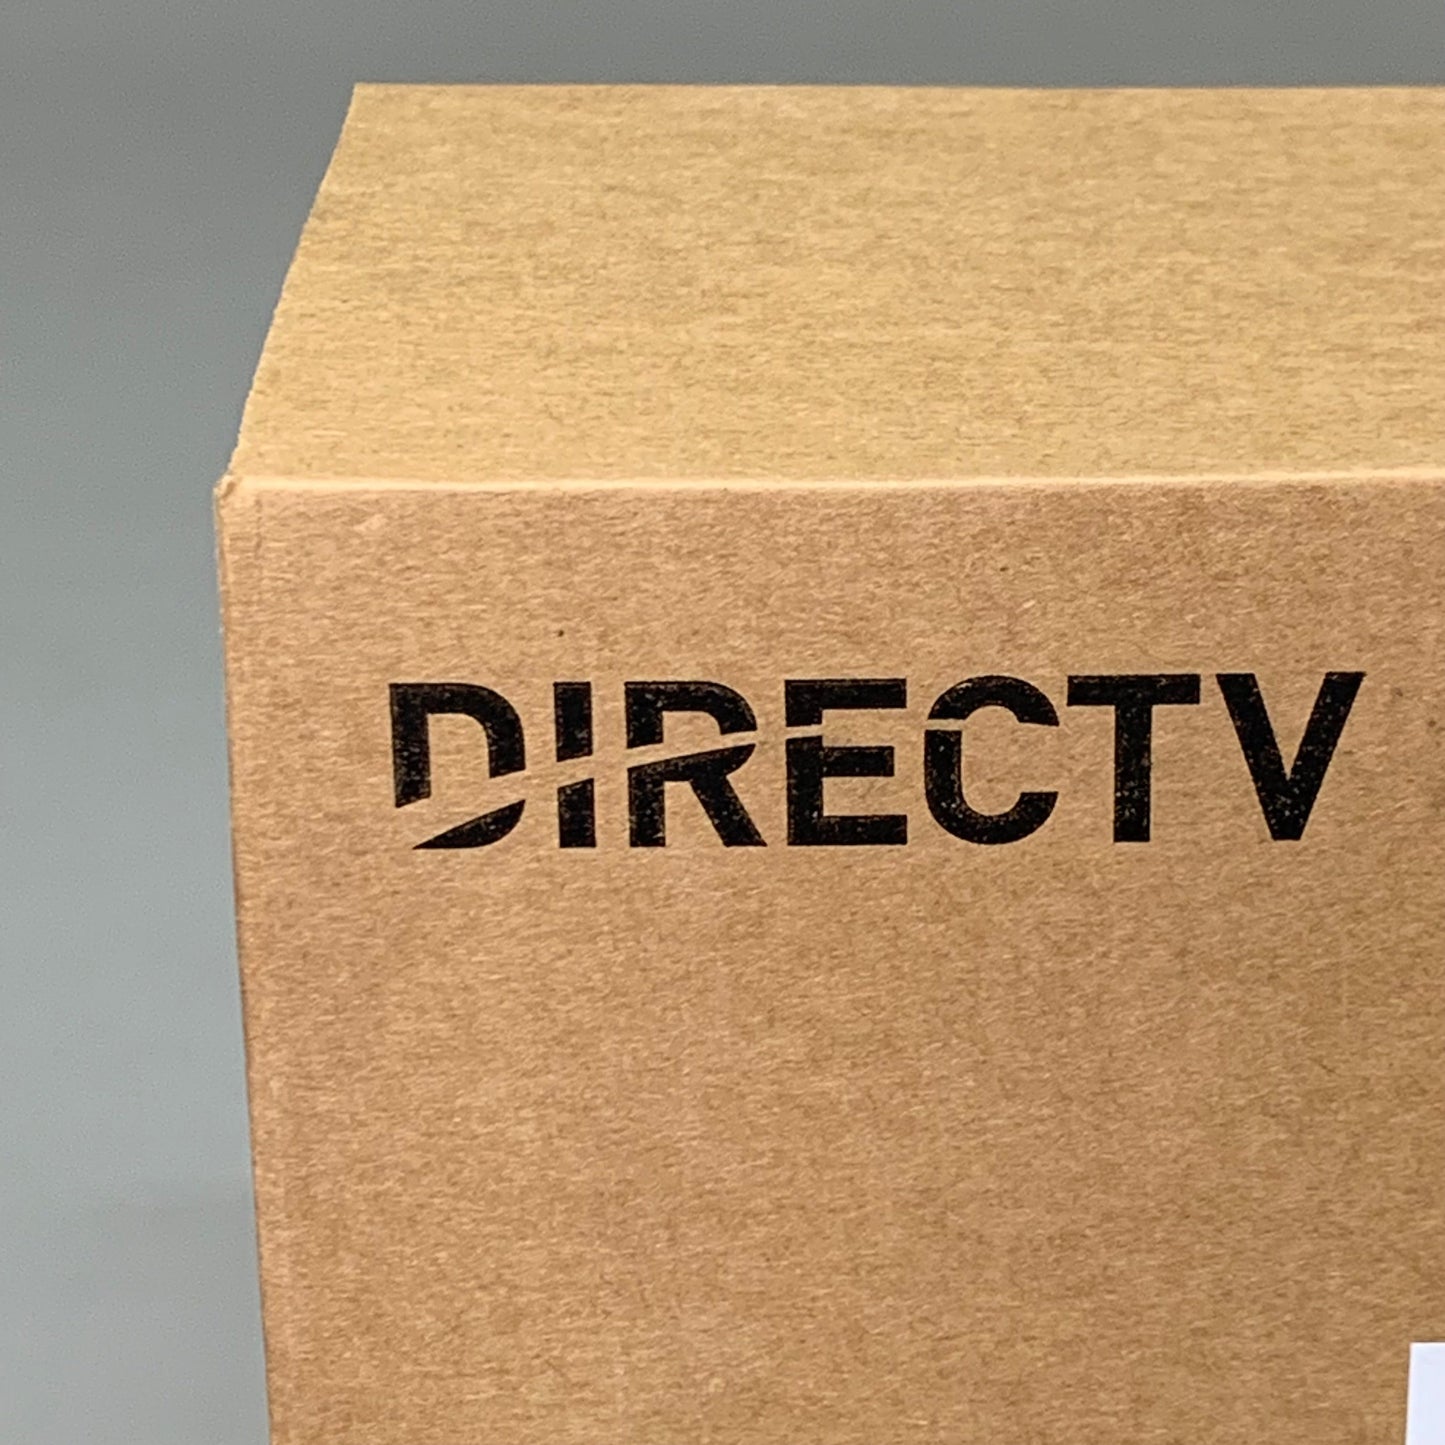 ZA@ DIRECT TV 10PK! Universal Remote Controls RC73MP-19 (New) C